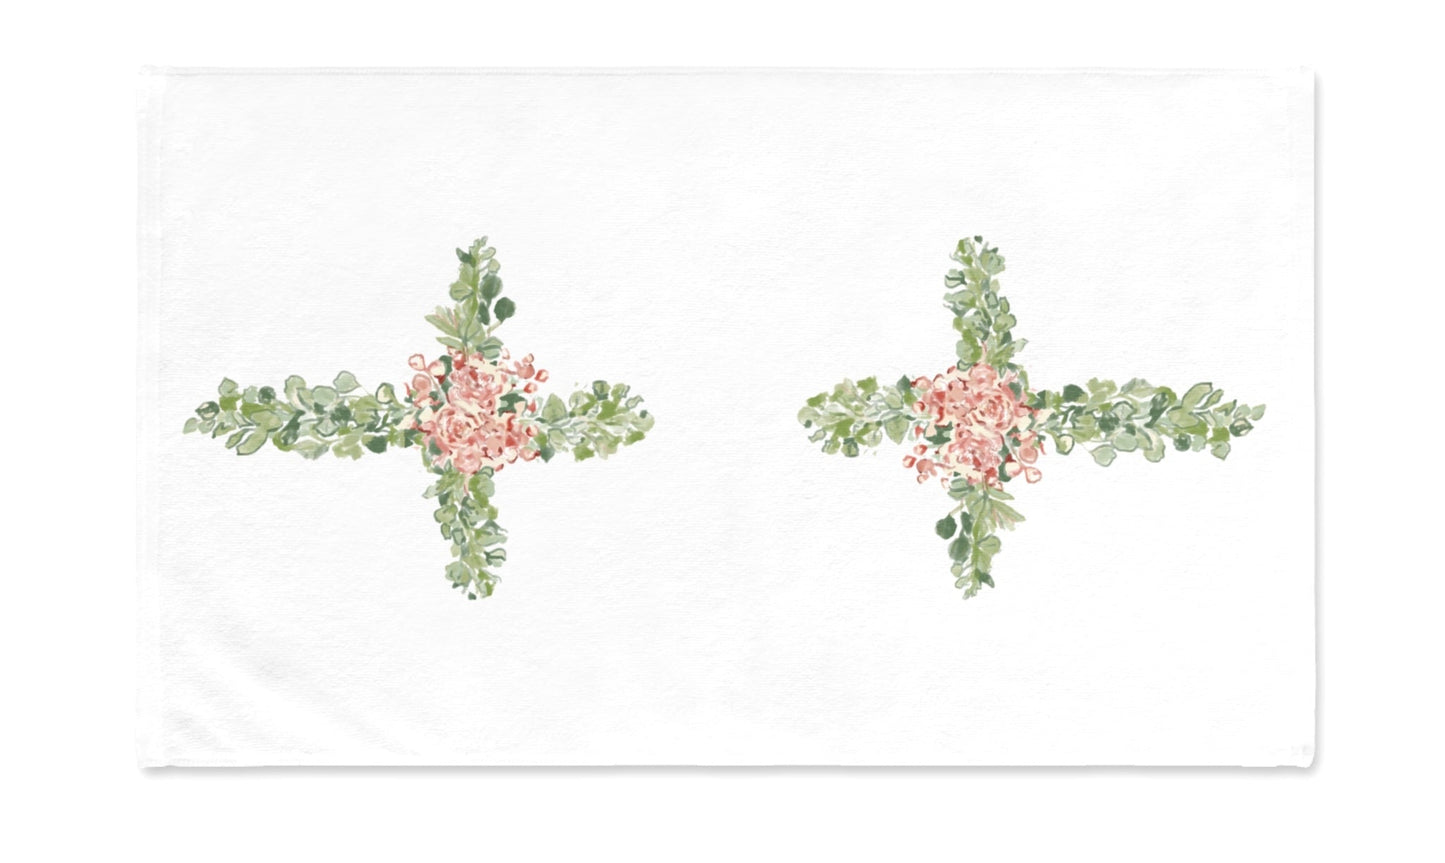 Floral Cross Tea Towel (Poly/ Cotton) - Blue Cava